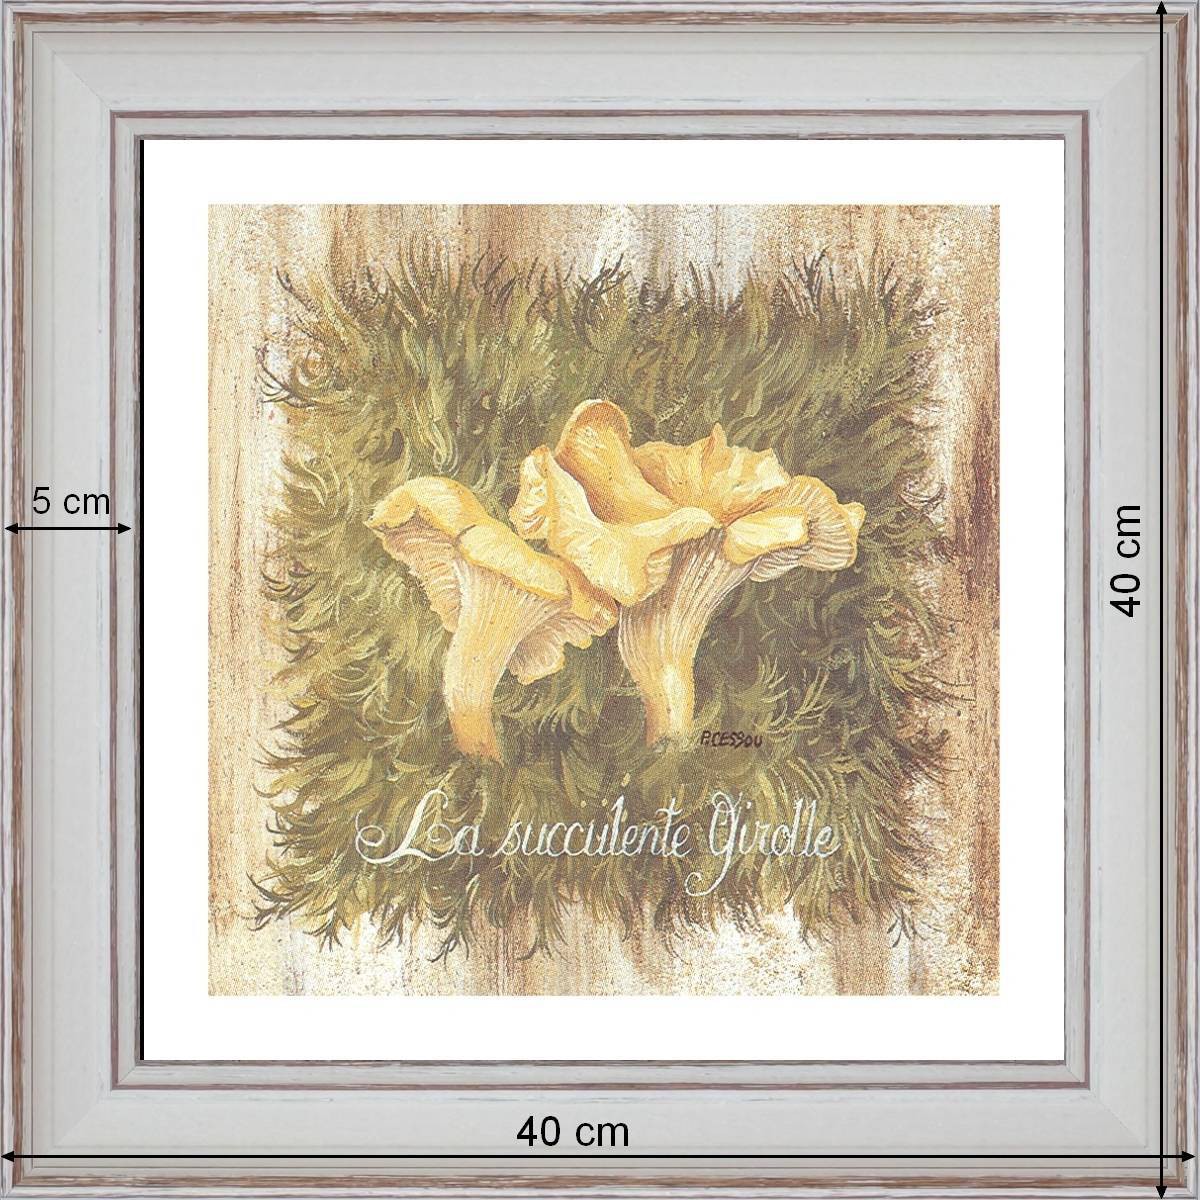 La Succulente Girolle - dimensions 40 x 40 cm - Blanc cassé